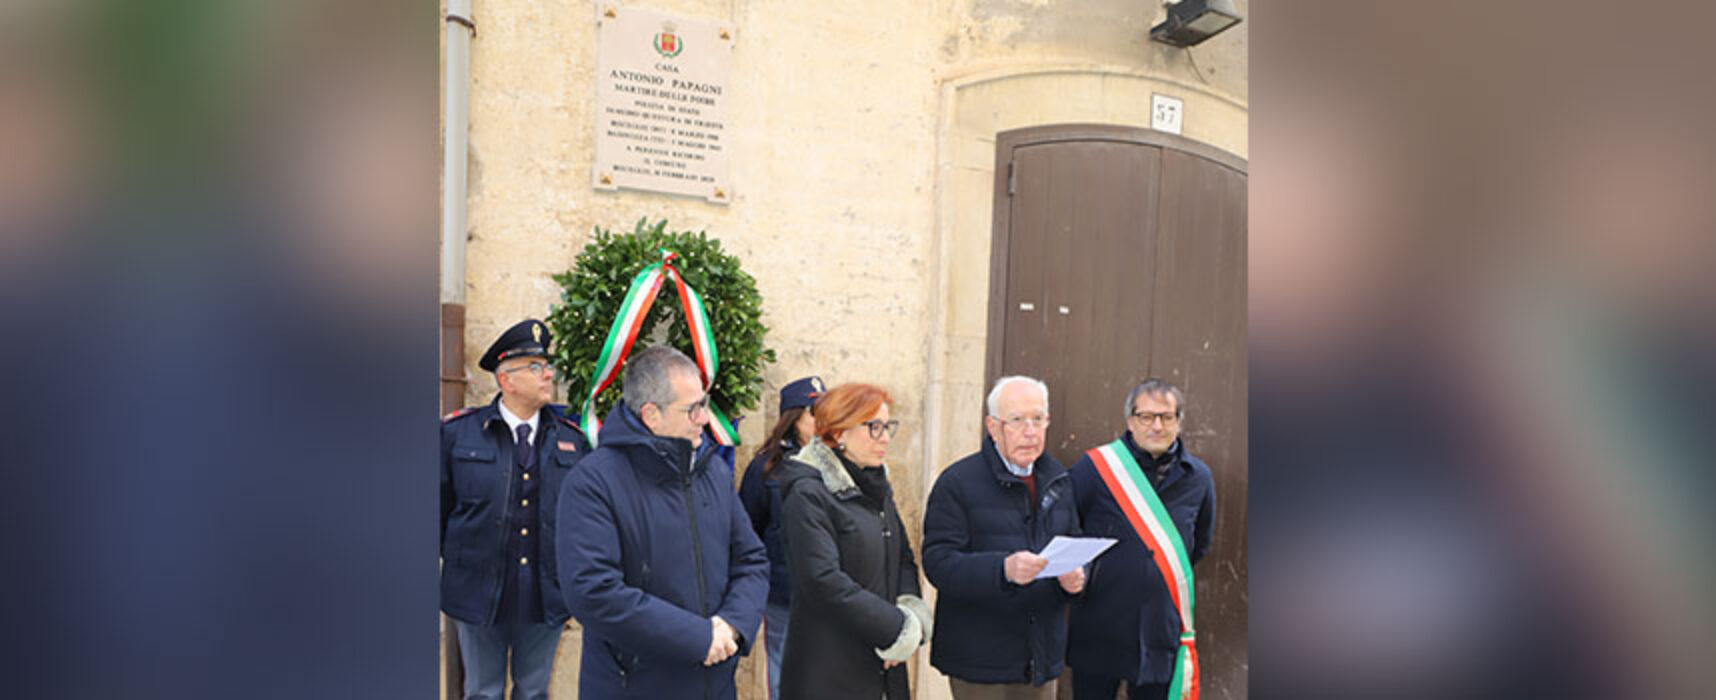 Bisceglie onora la memoria di Antonio Papagni, vittima del massacro delle Foibe / FOTO